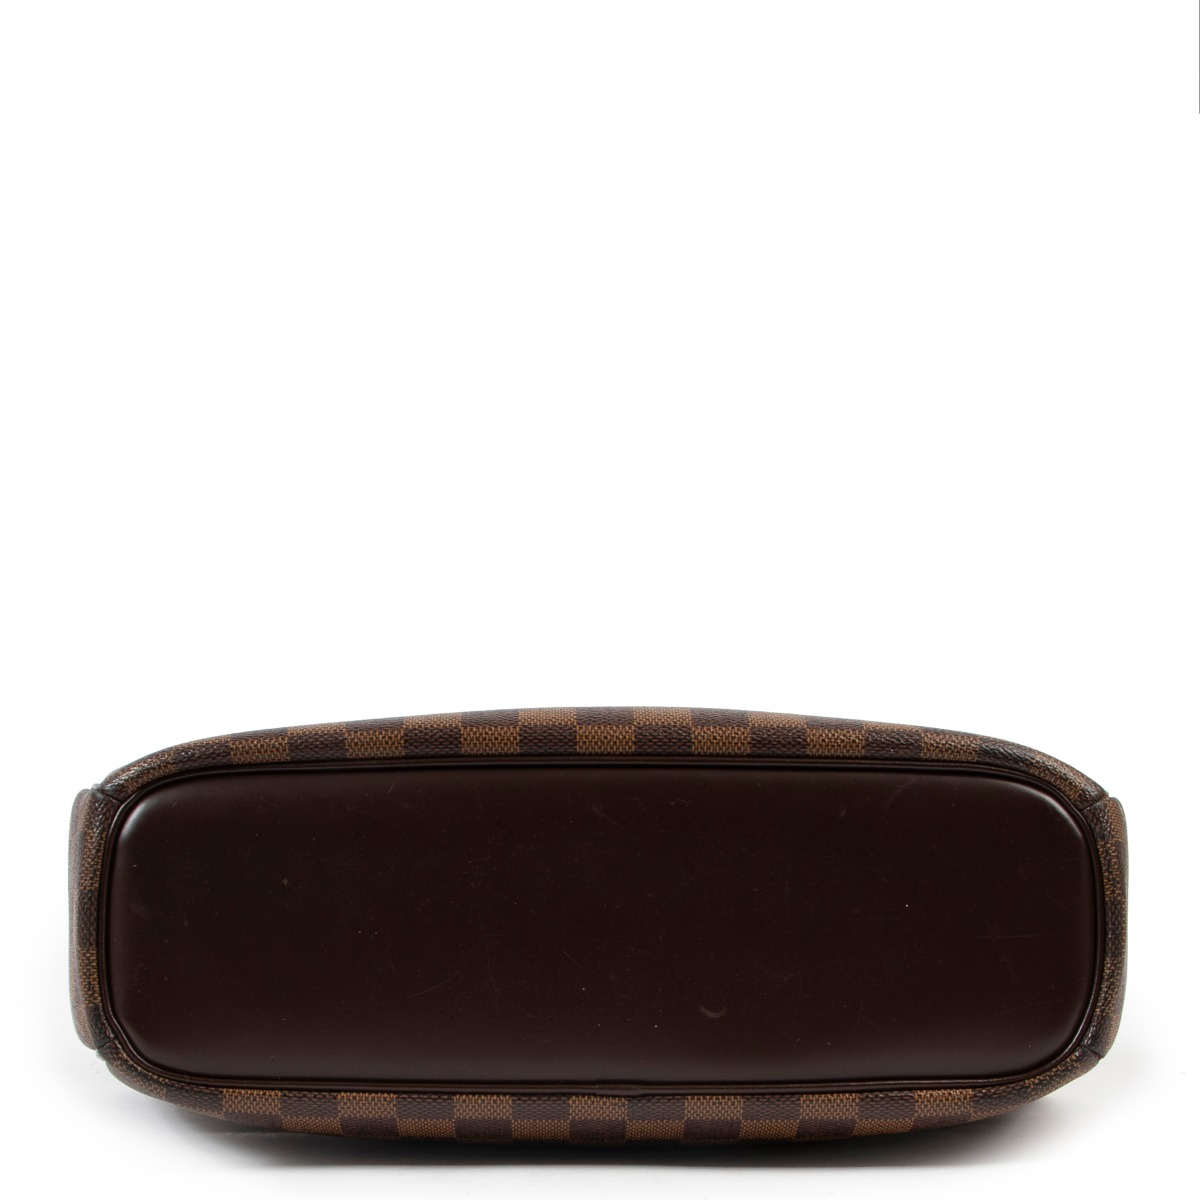 Louis Vuitton Brera Damier Ebene Handbag ○ Labellov ○ Buy and